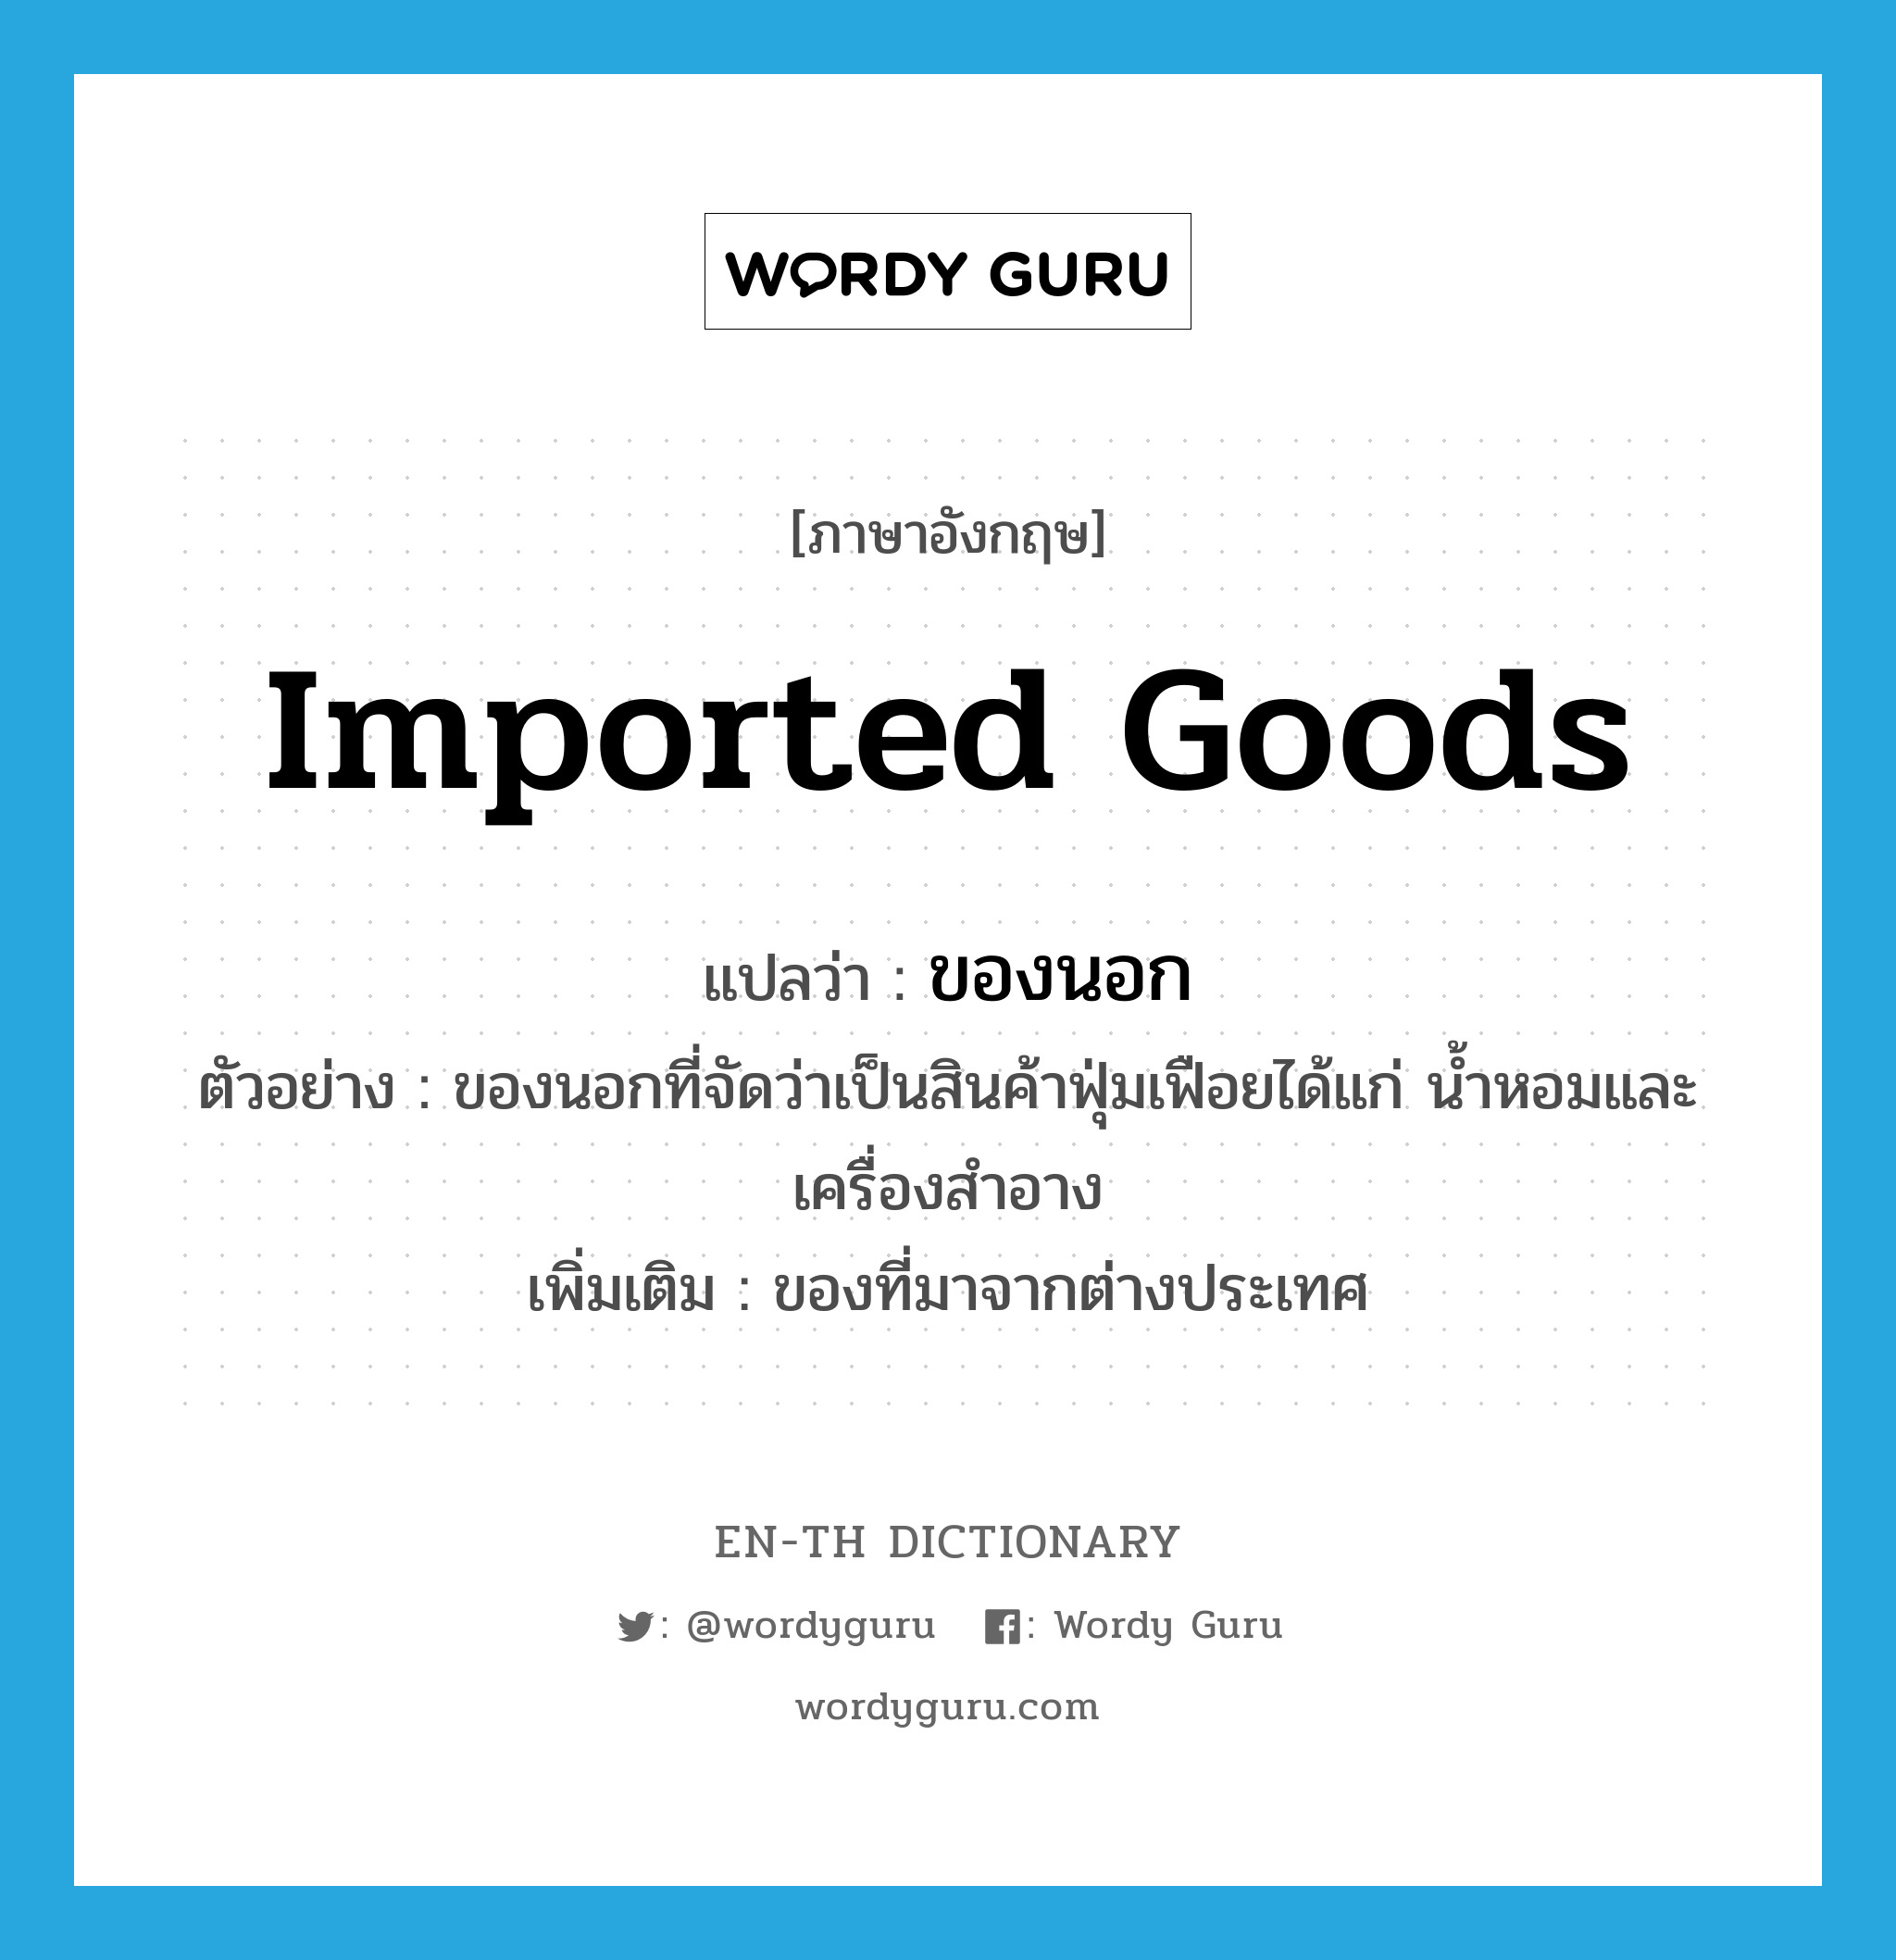 imported goods แปลว่า?, คำศัพท์ภาษาอังกฤษ imported goods แปลว่า ของนอก ประเภท N ตัวอย่าง ของนอกที่จัดว่าเป็นสินค้าฟุ่มเฟือยได้แก่ น้ำหอมและเครื่องสำอาง เพิ่มเติม ของที่มาจากต่างประเทศ หมวด N